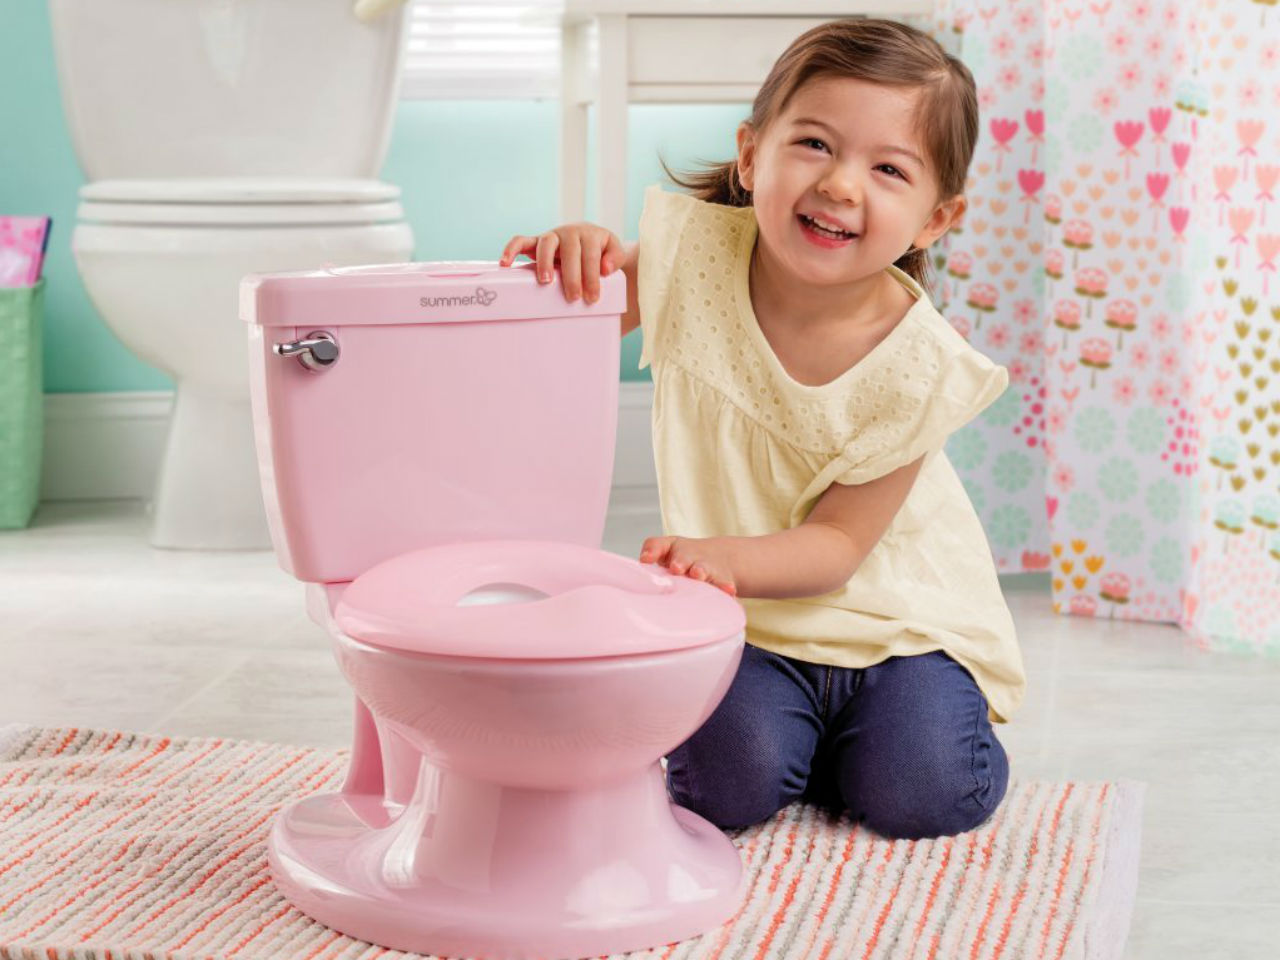 مقاله آموزش دستشویی رفتن به کودکان